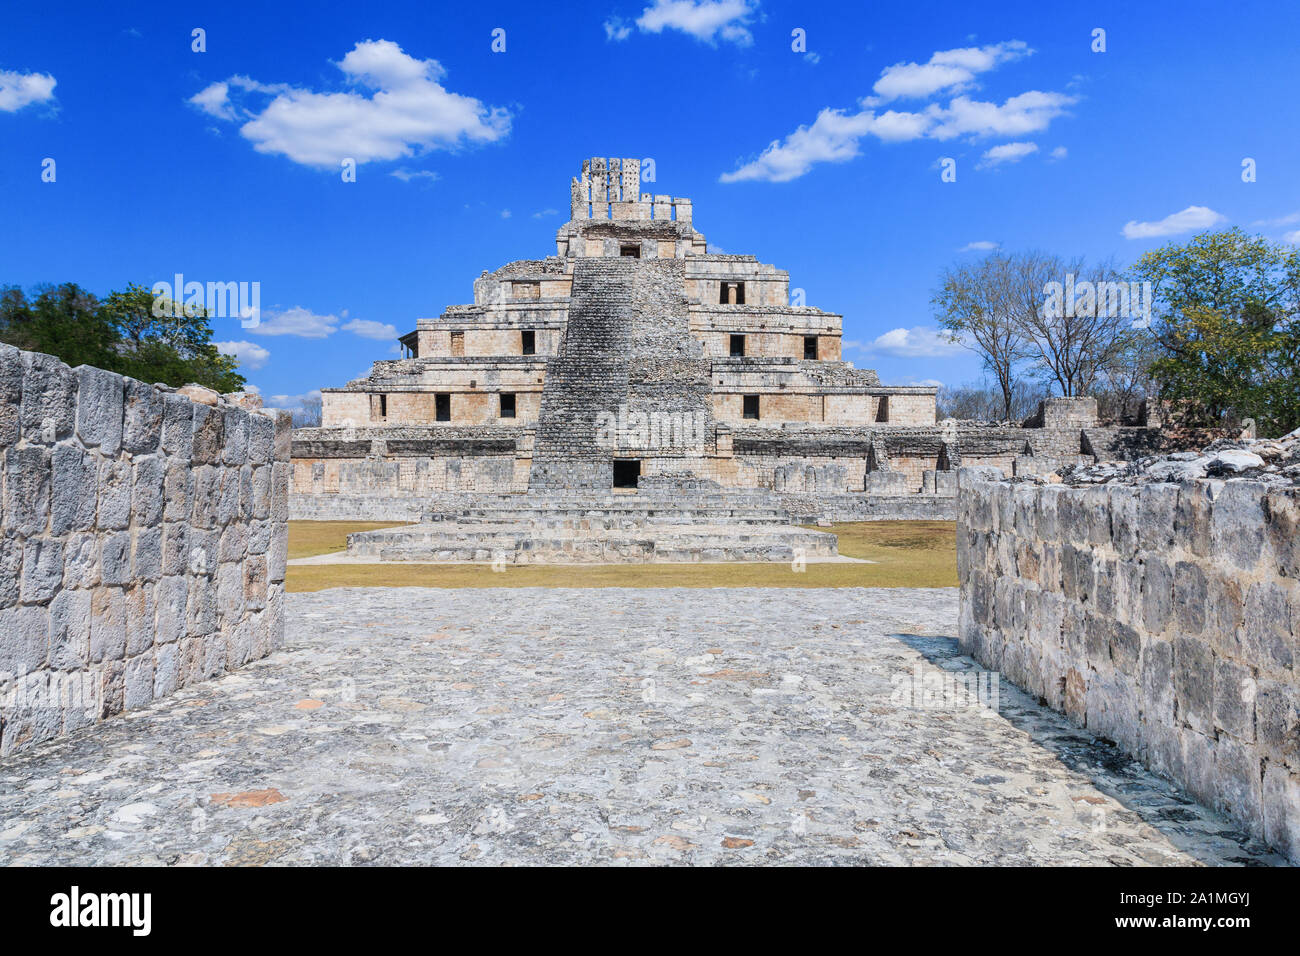 Campeche, Messico. Edzna città maya. La piramide di cinque piani. Foto Stock